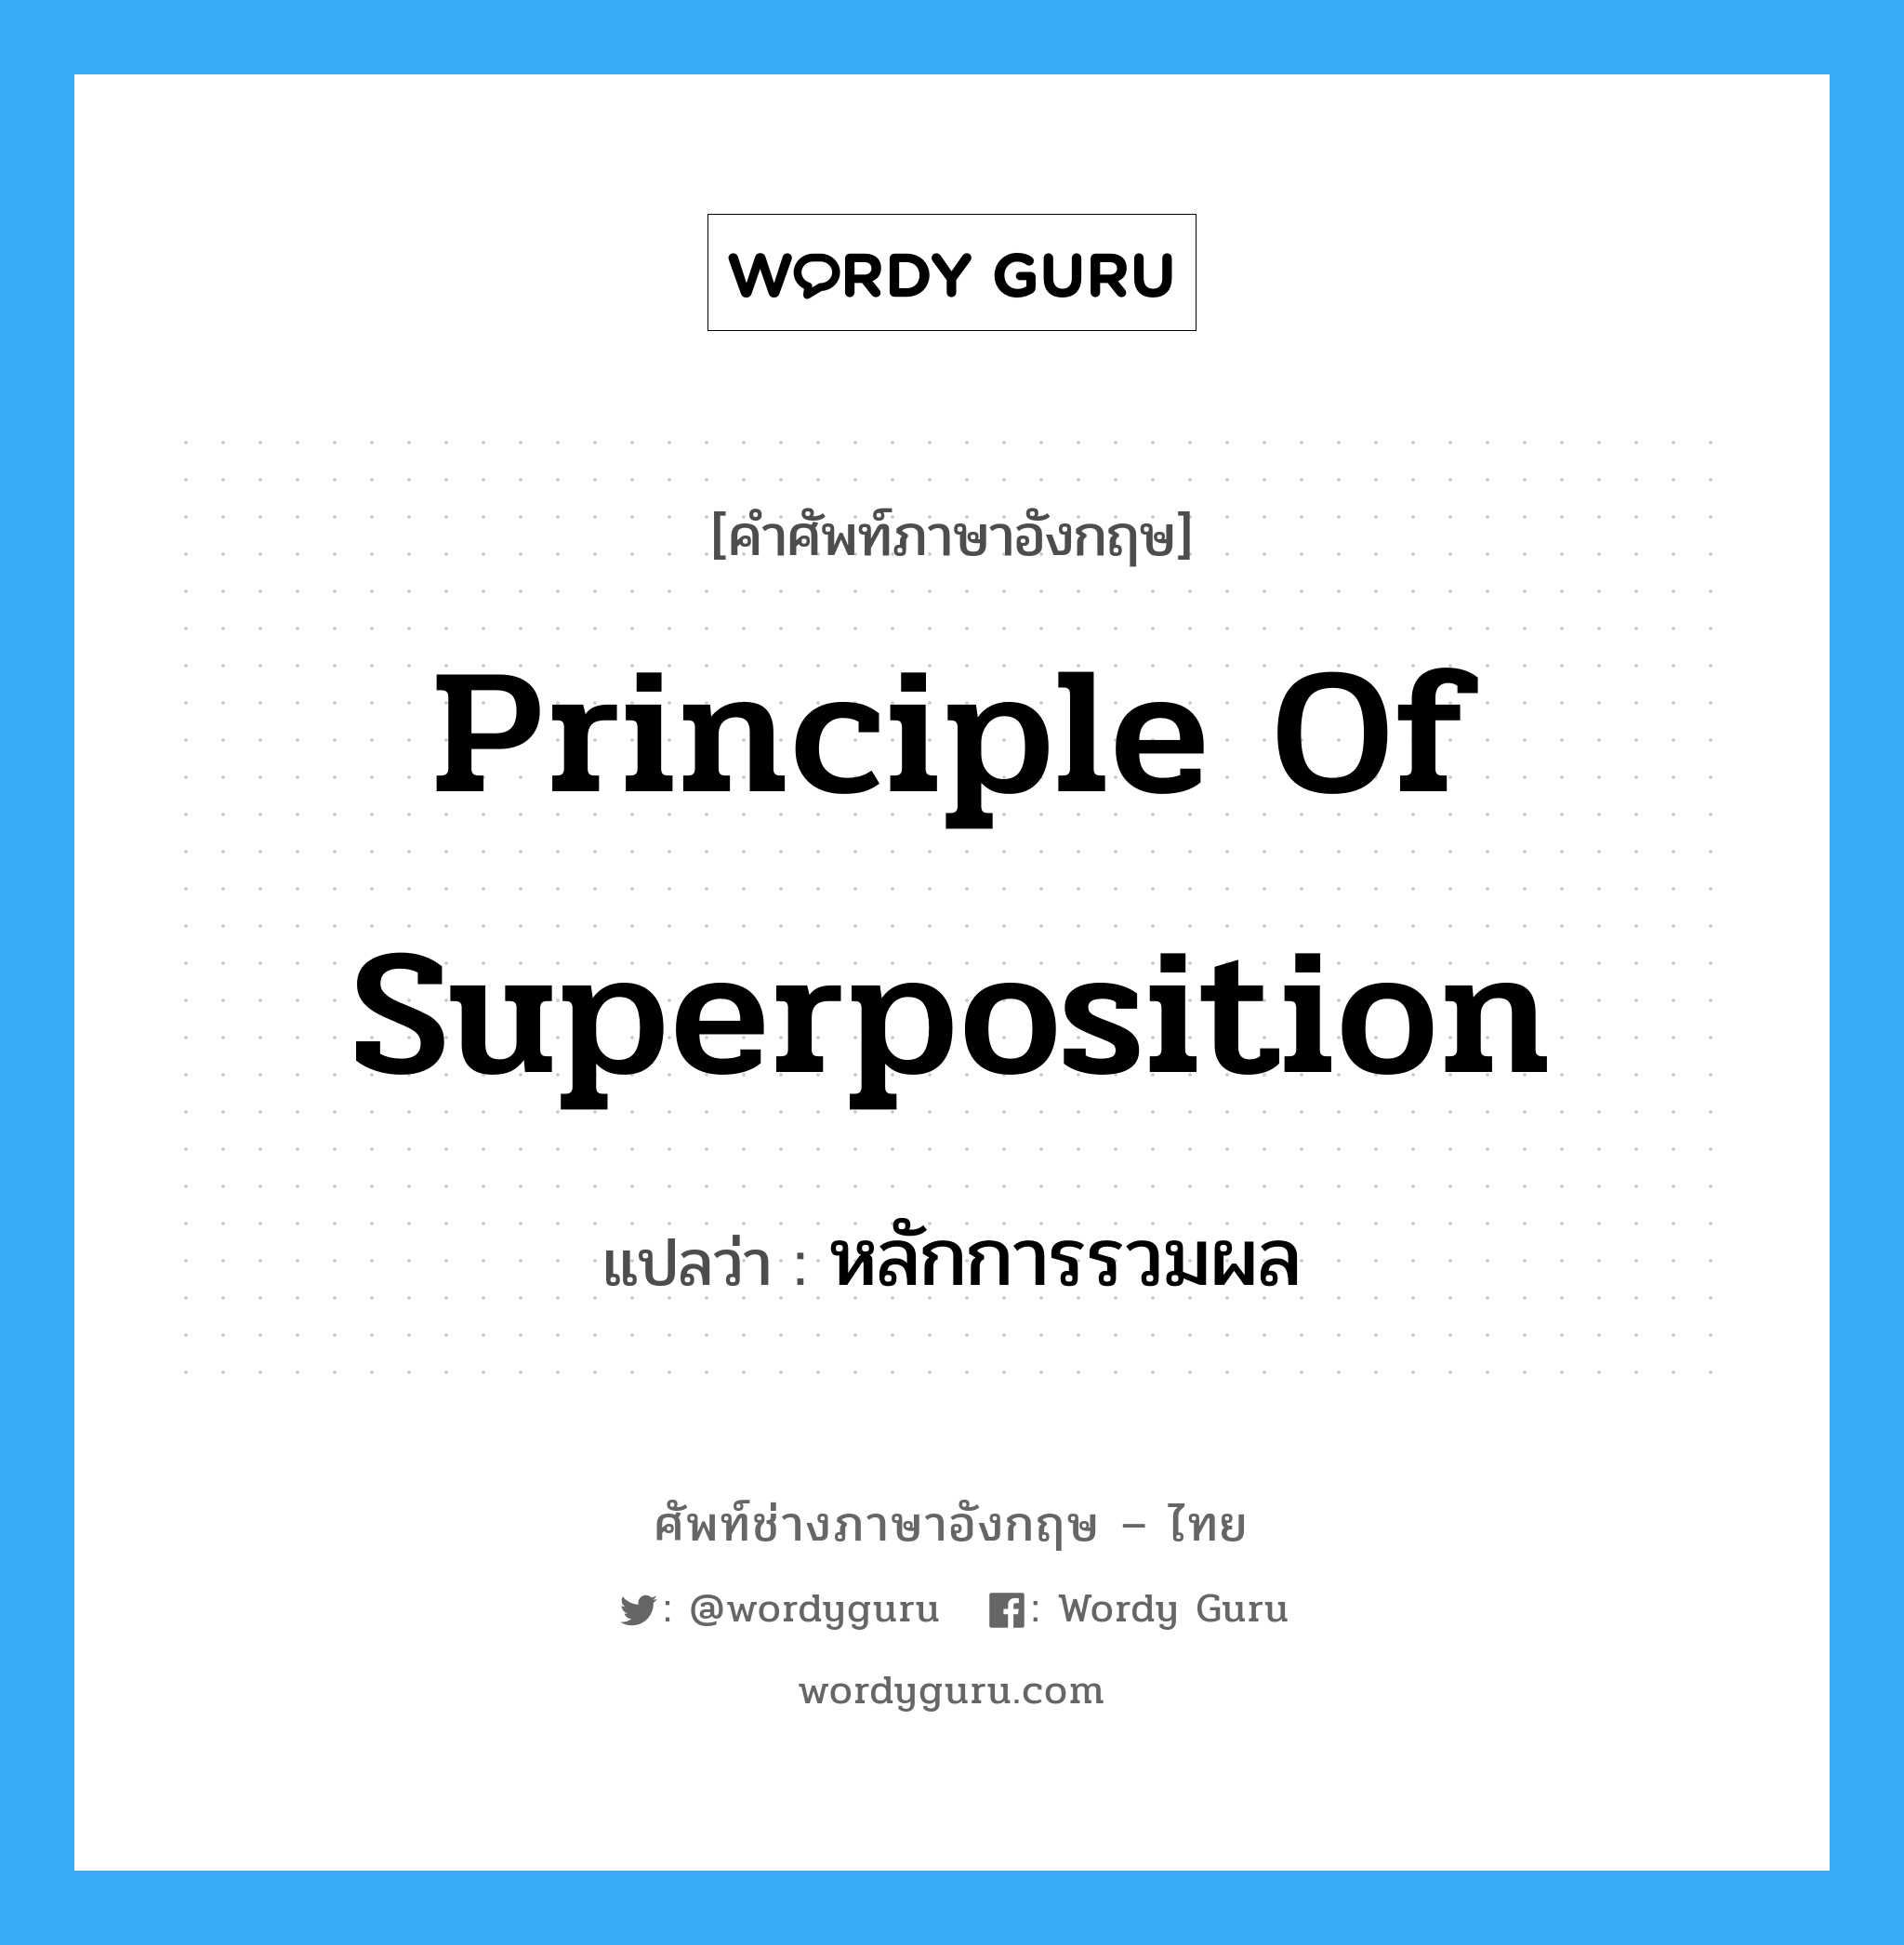 หลักการรวมผล ภาษาอังกฤษ?, คำศัพท์ช่างภาษาอังกฤษ - ไทย หลักการรวมผล คำศัพท์ภาษาอังกฤษ หลักการรวมผล แปลว่า Principle of Superposition